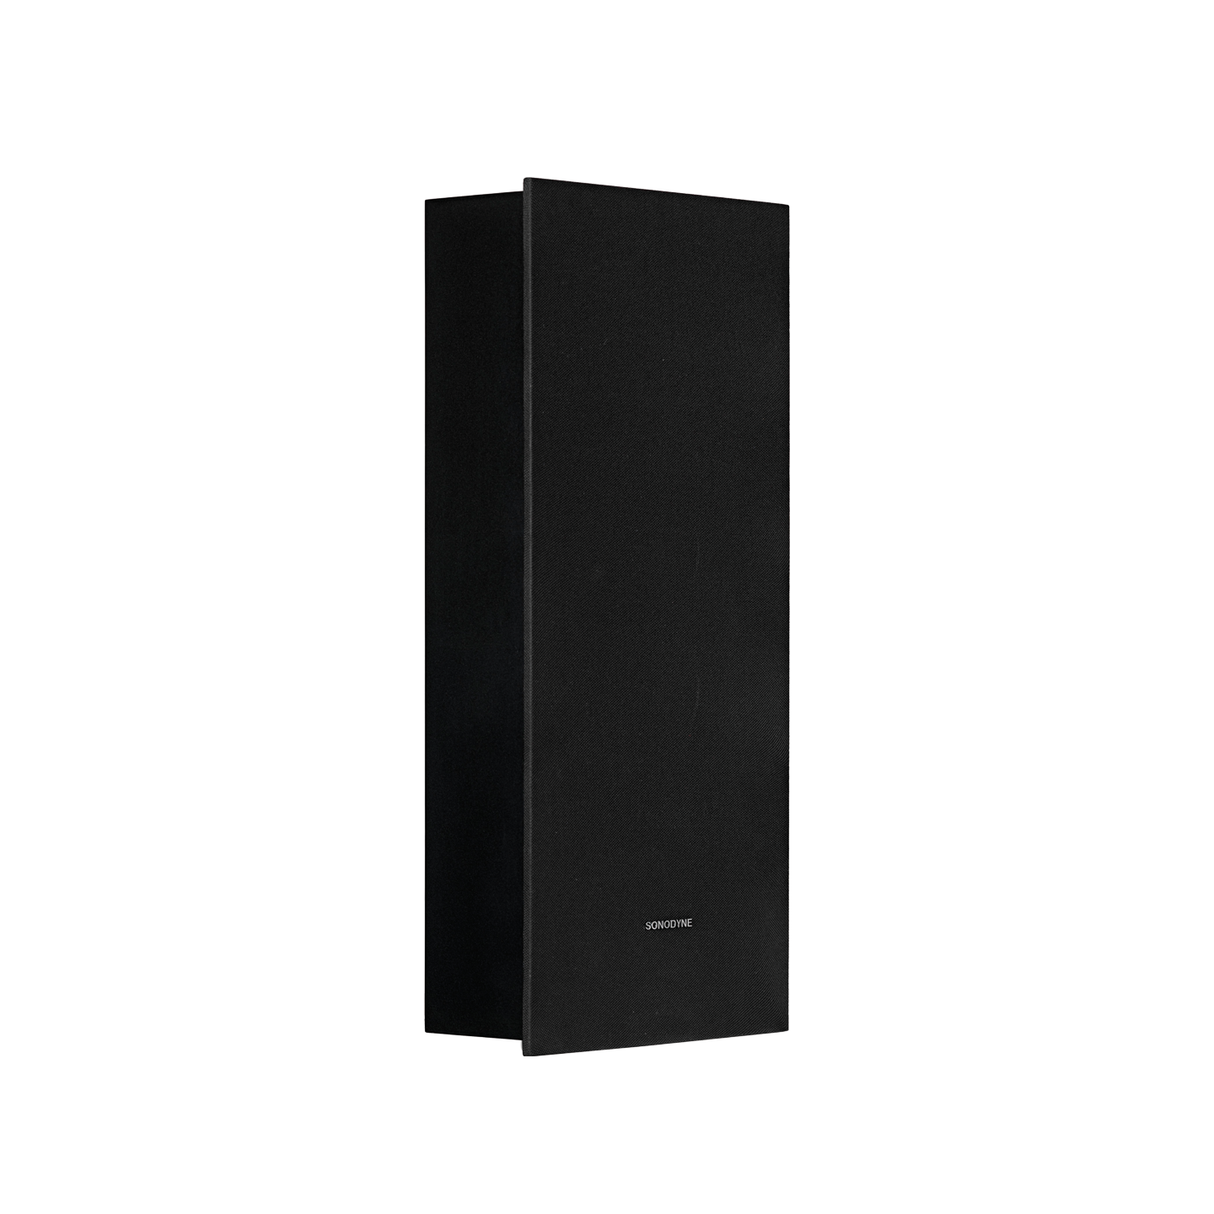 Sonodyne IWO-511 On-Wall/ In-Wall Speaker (Each)